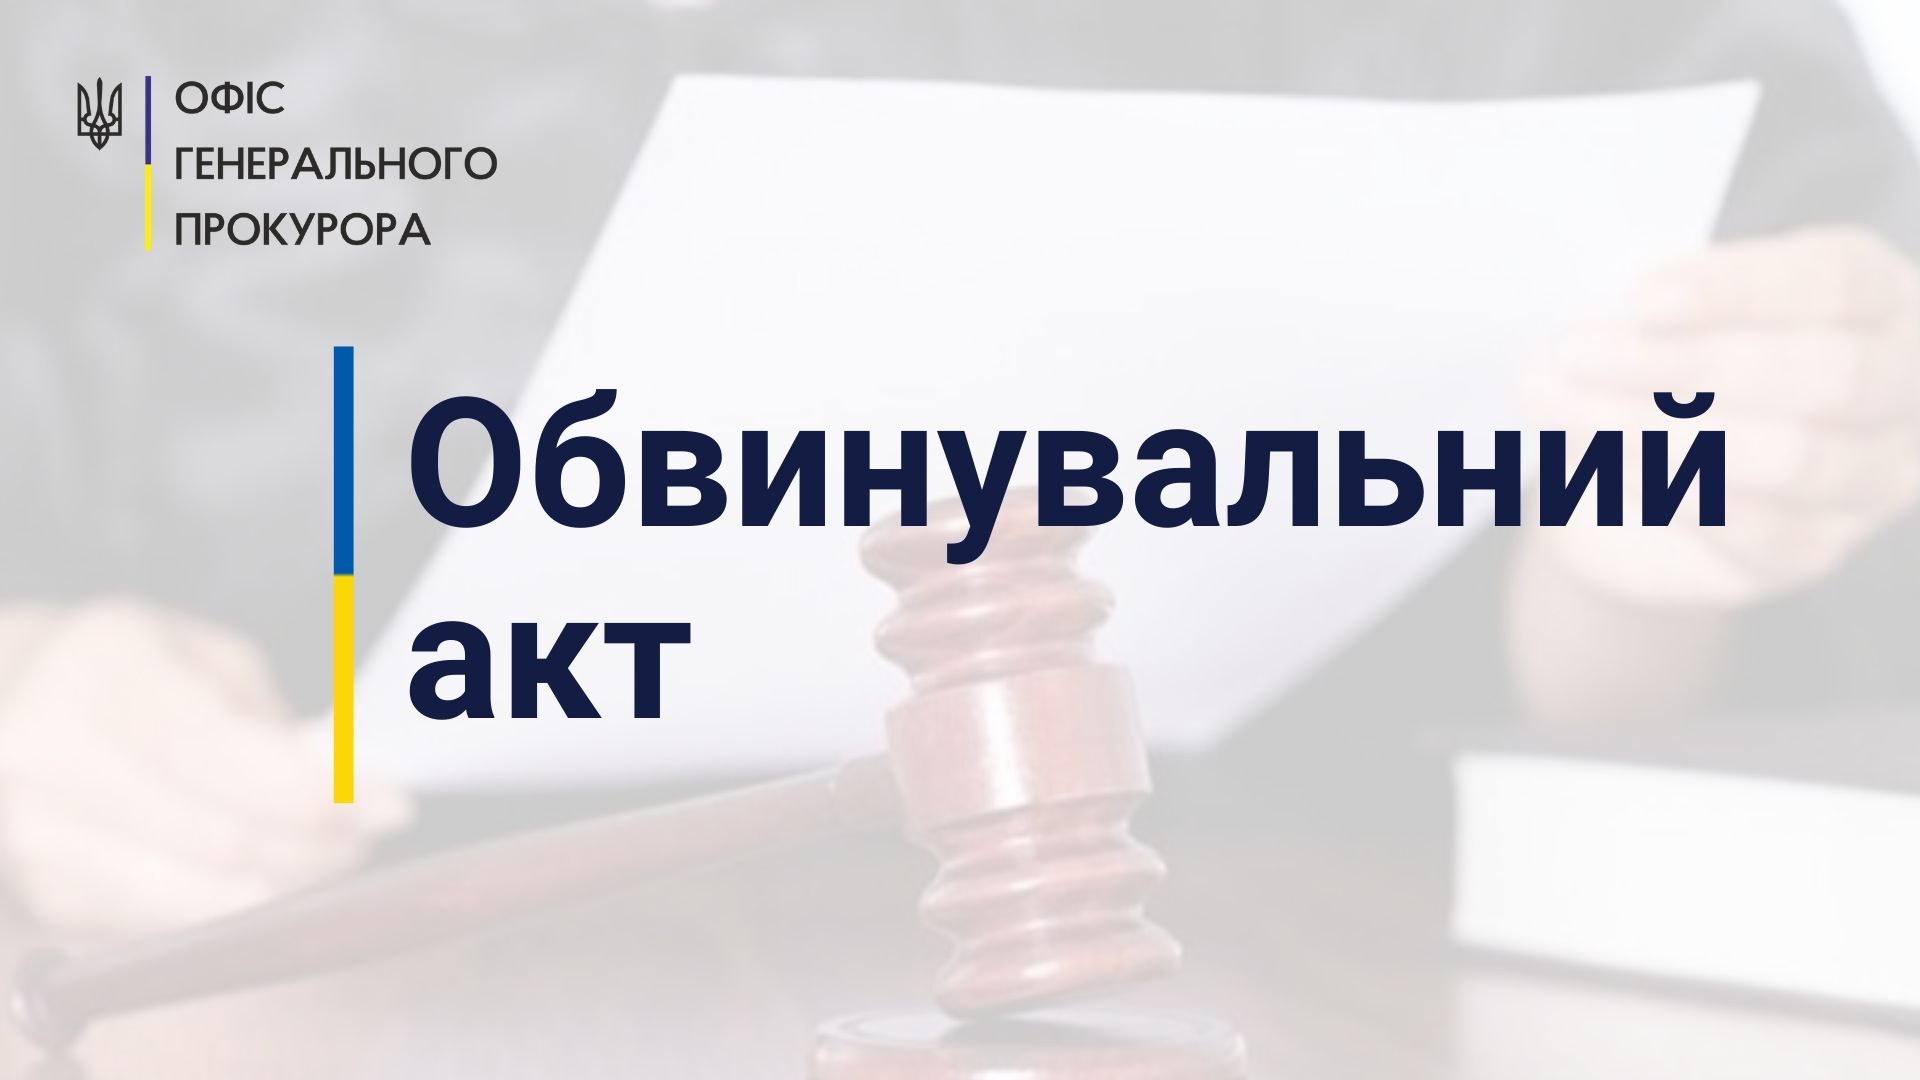 Розтрата понад 384 млн грн – судитимуть радника голови правління банку